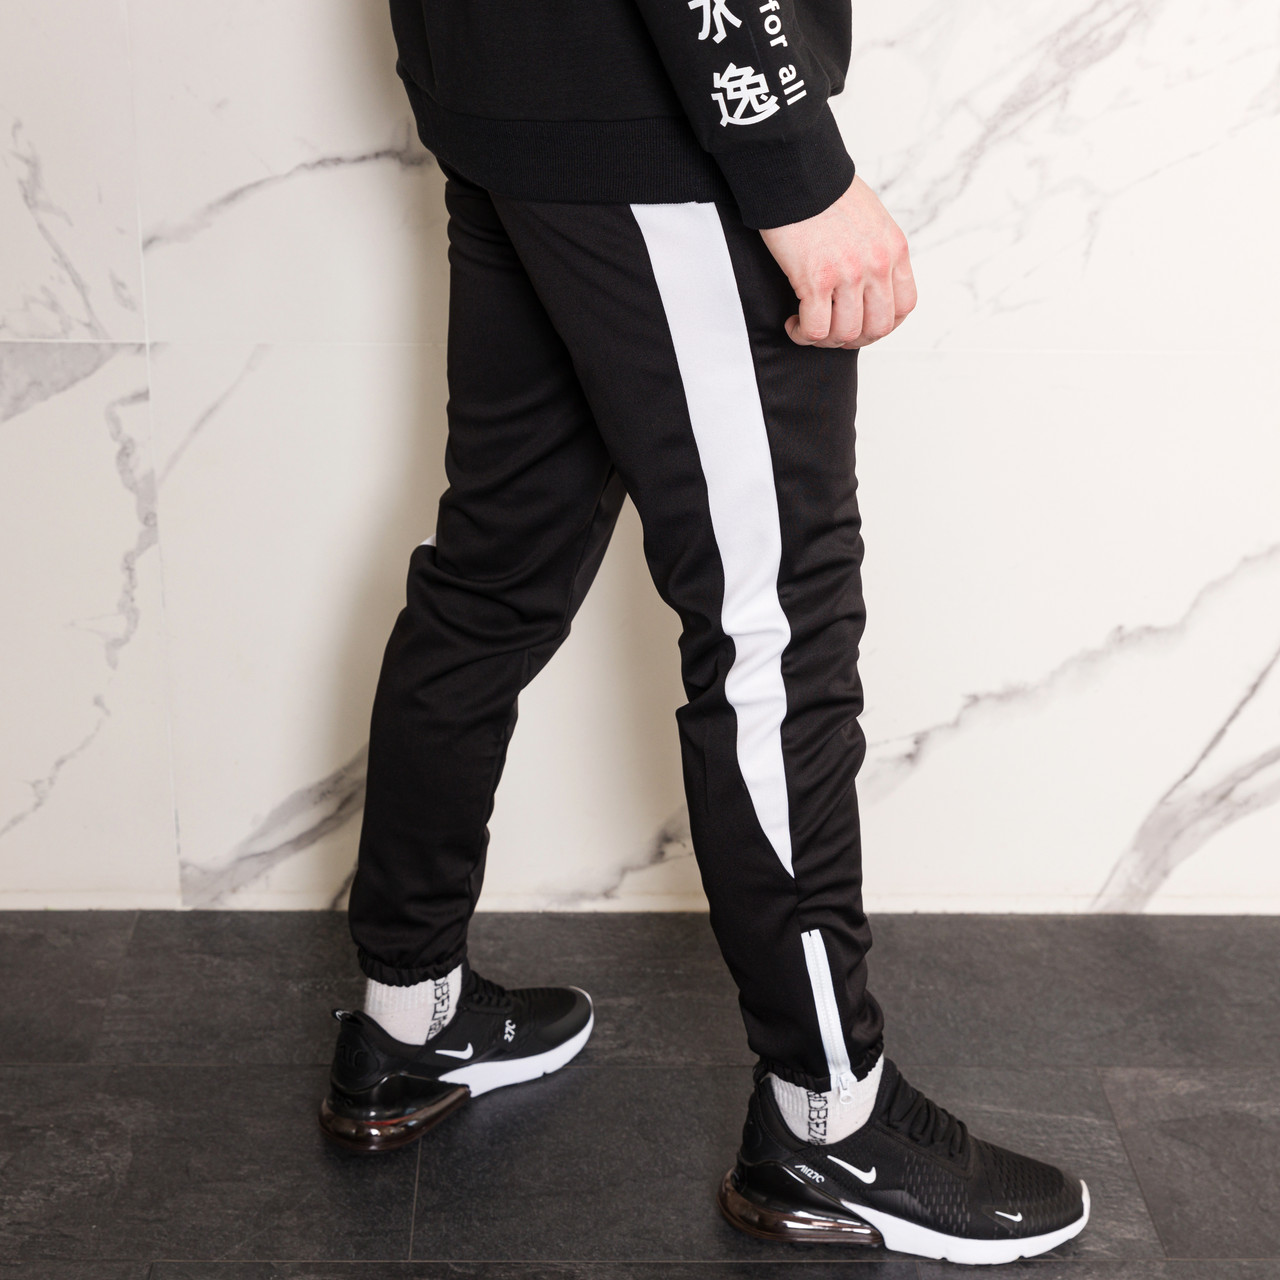 Спортивні чорні штани з білим лампасом чоловічі бренд ТУР модель Роккі (Rocky) TURWEAR - Фото 4